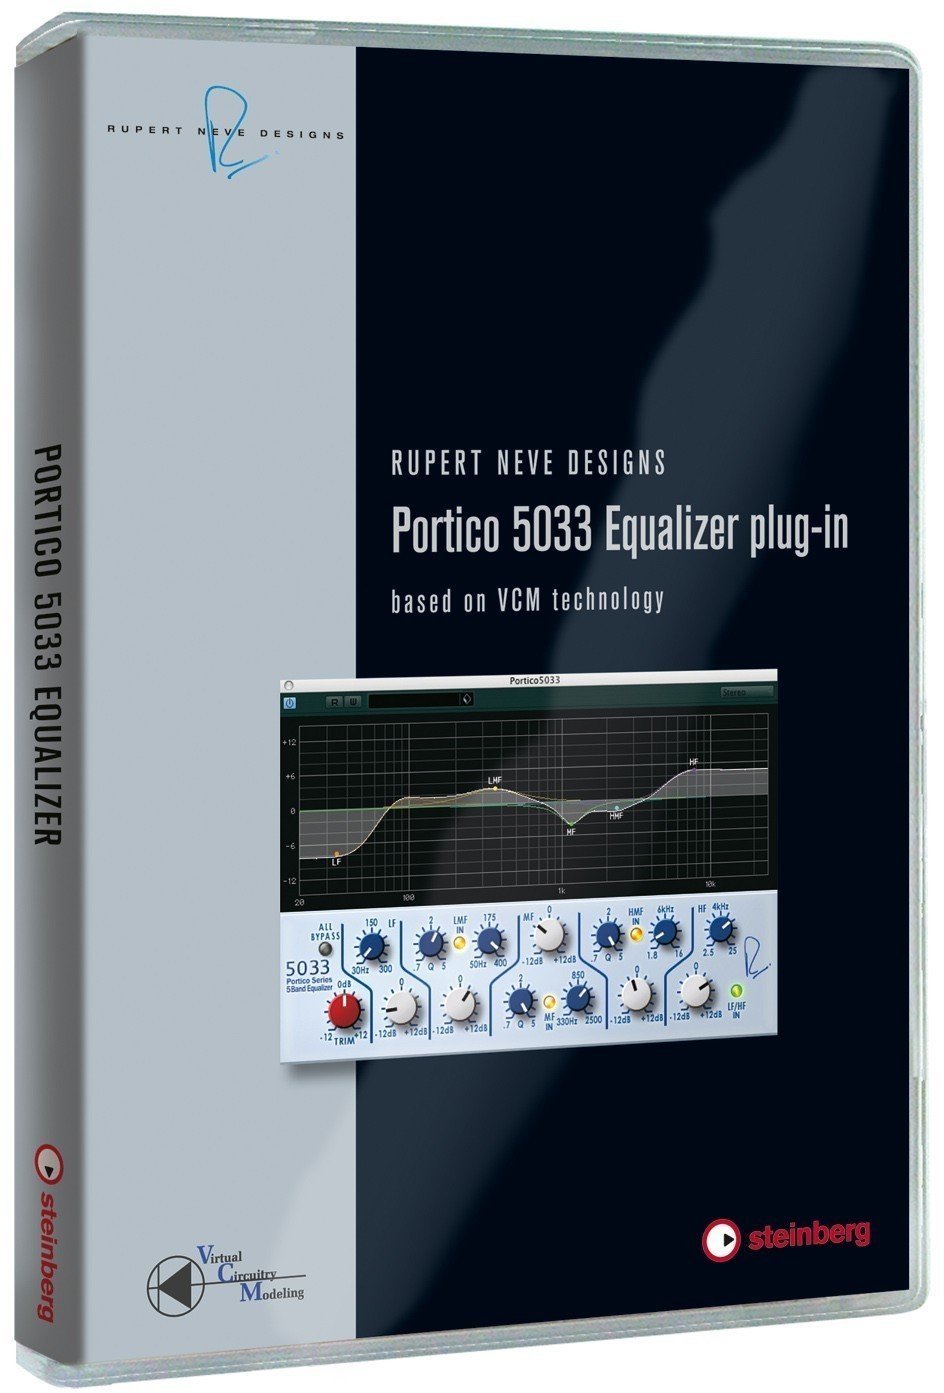 Στούντιο Software VST Μουσικό Όργανο Steinberg RND Portico 5033 EQ